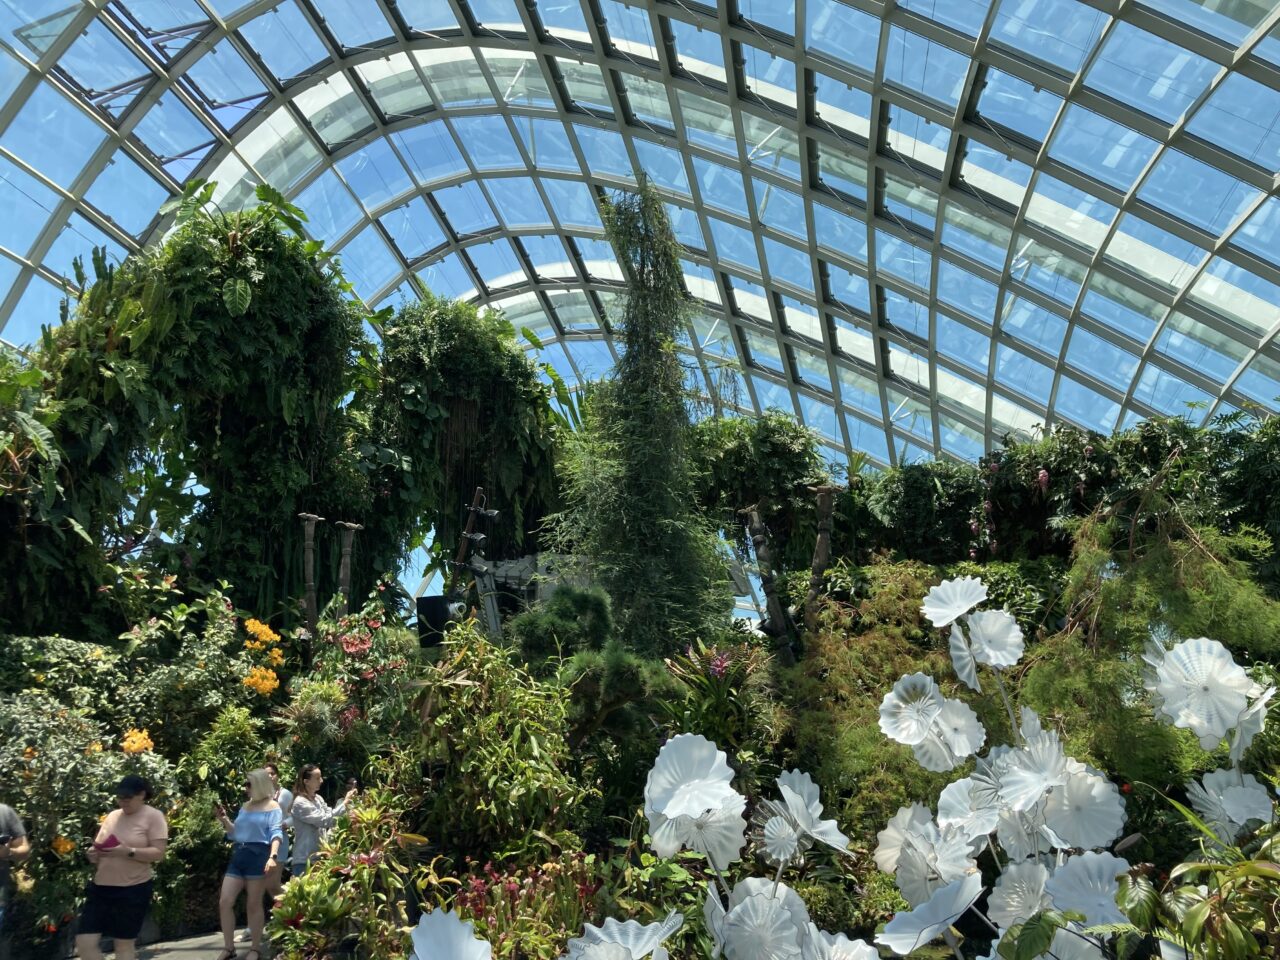 アバターザエクスペリエンス・ガーデンズ・バイ・ザ・ベイシンガポールのアバターの世界